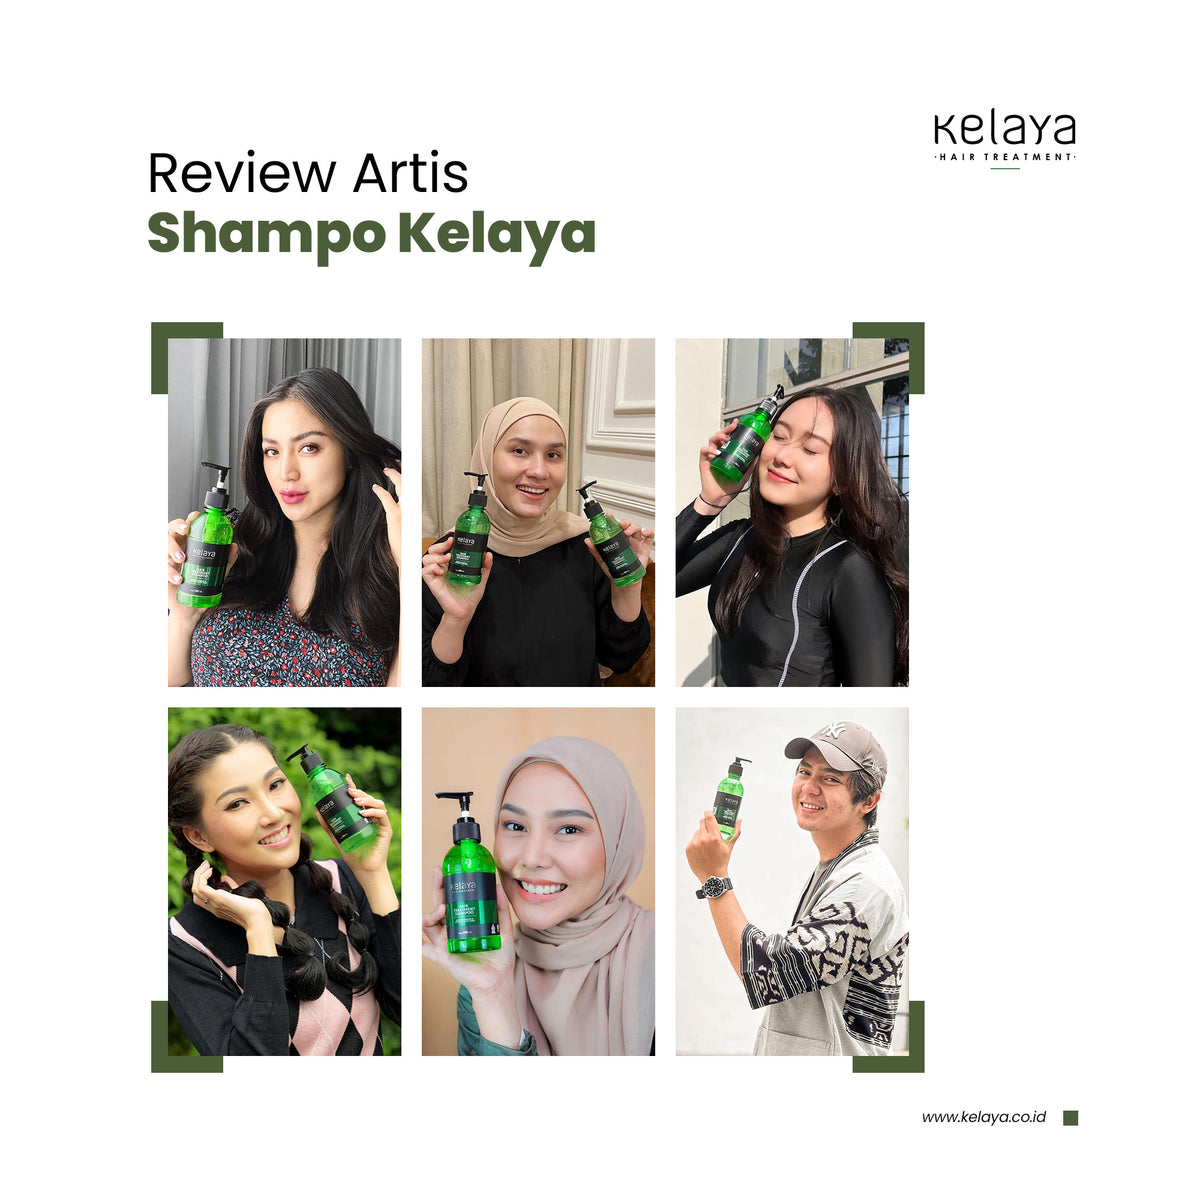 Kelaya Hair Treatment Shampoo 250 ml